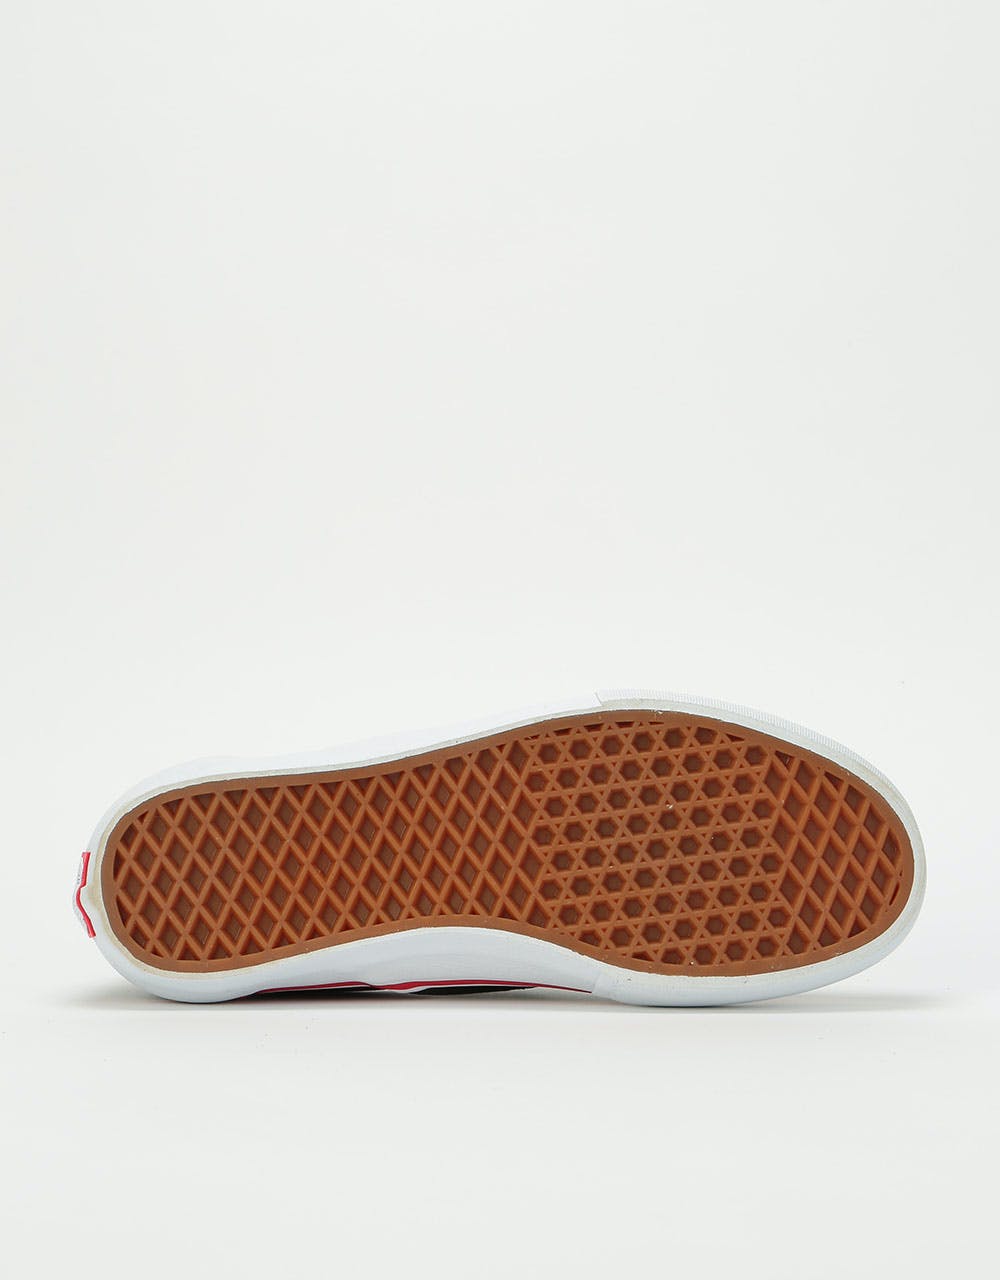 Vans Slip-On Pro Skate Shoes - (Baker) Rowan/Speed Check